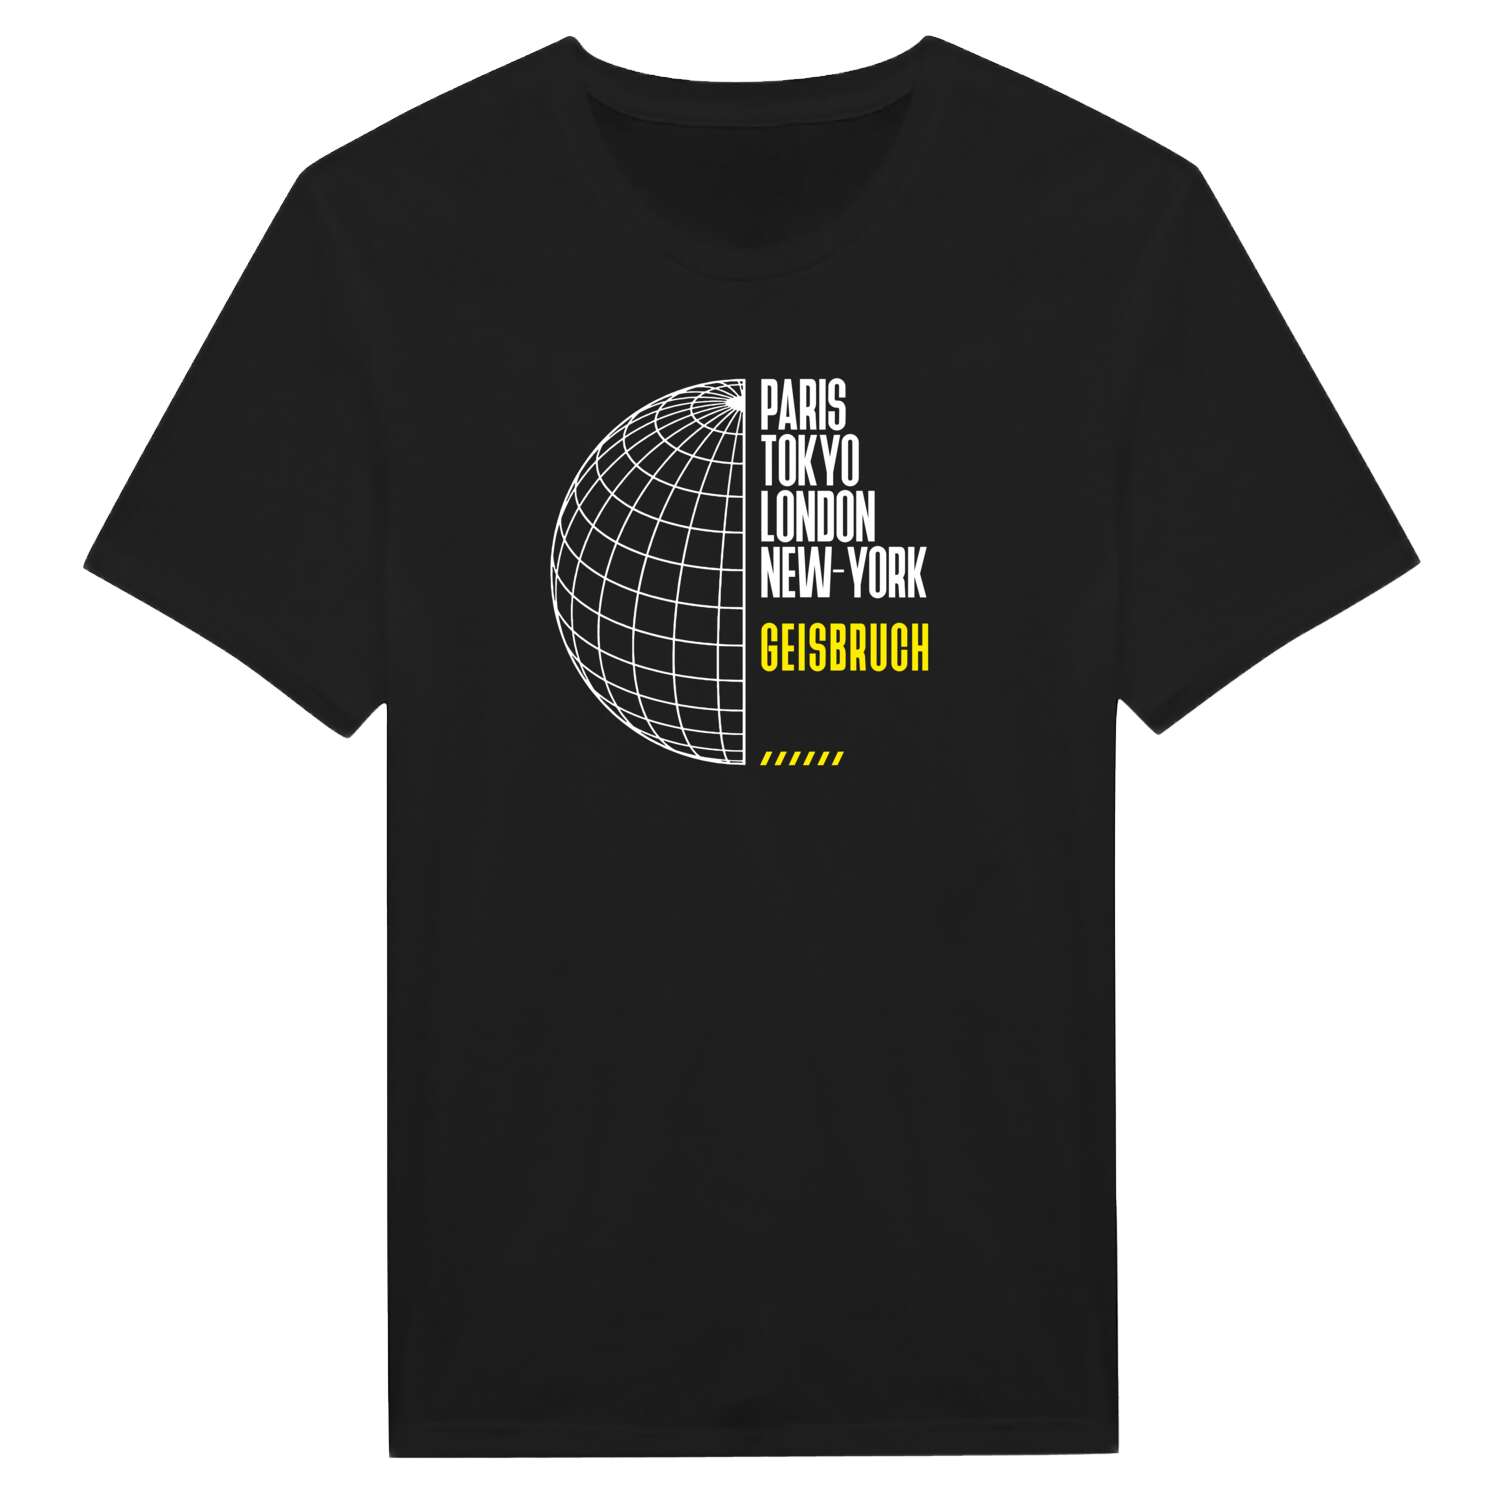 Geisbruch T-Shirt »Paris Tokyo London«